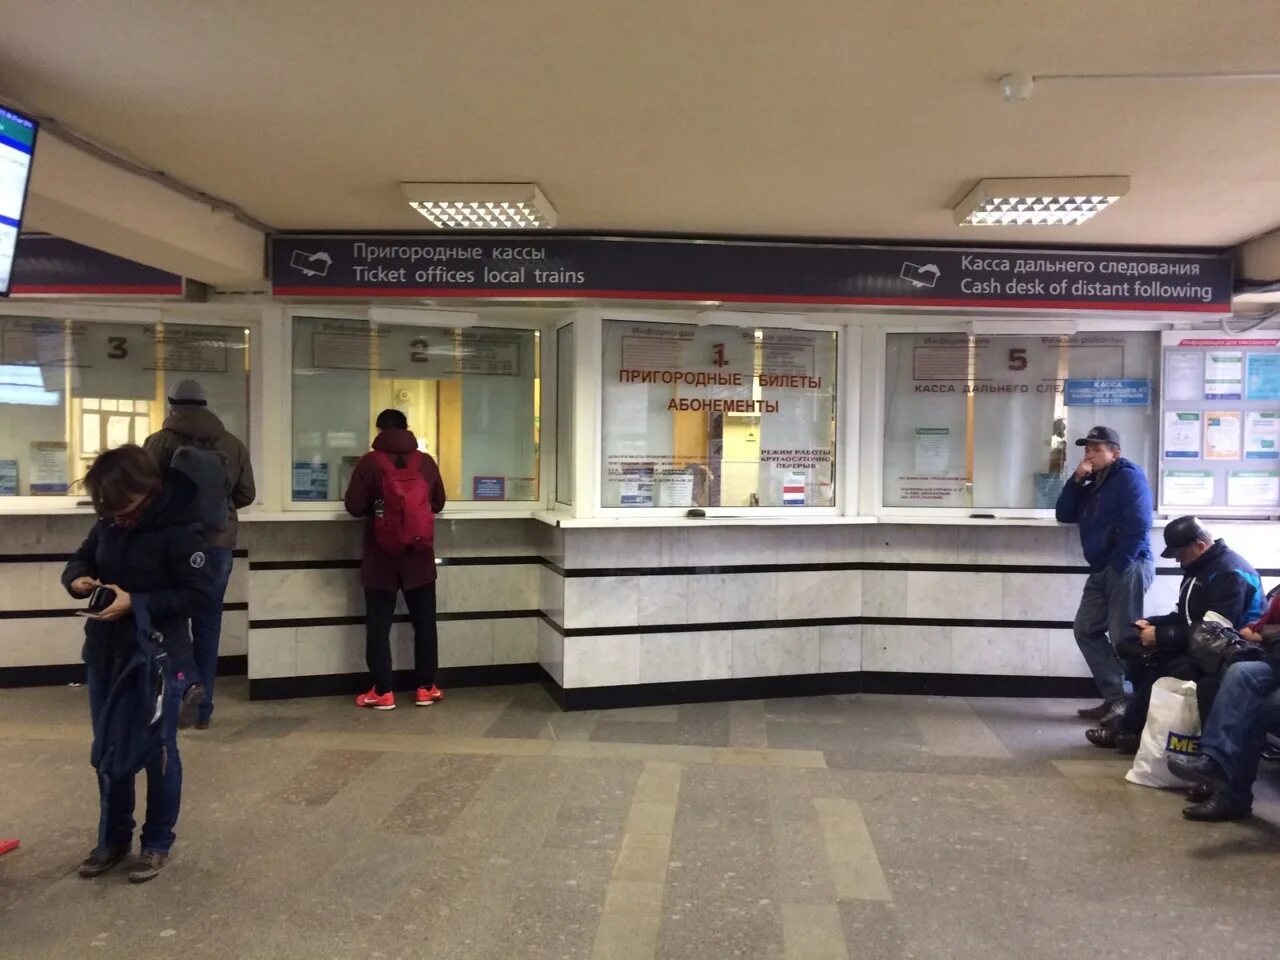 Пригородные кассы ЖД вокзала Новосибирск. Кассы железнодорожных билетов. Касса на вокзале. Билетная касса ЖД.